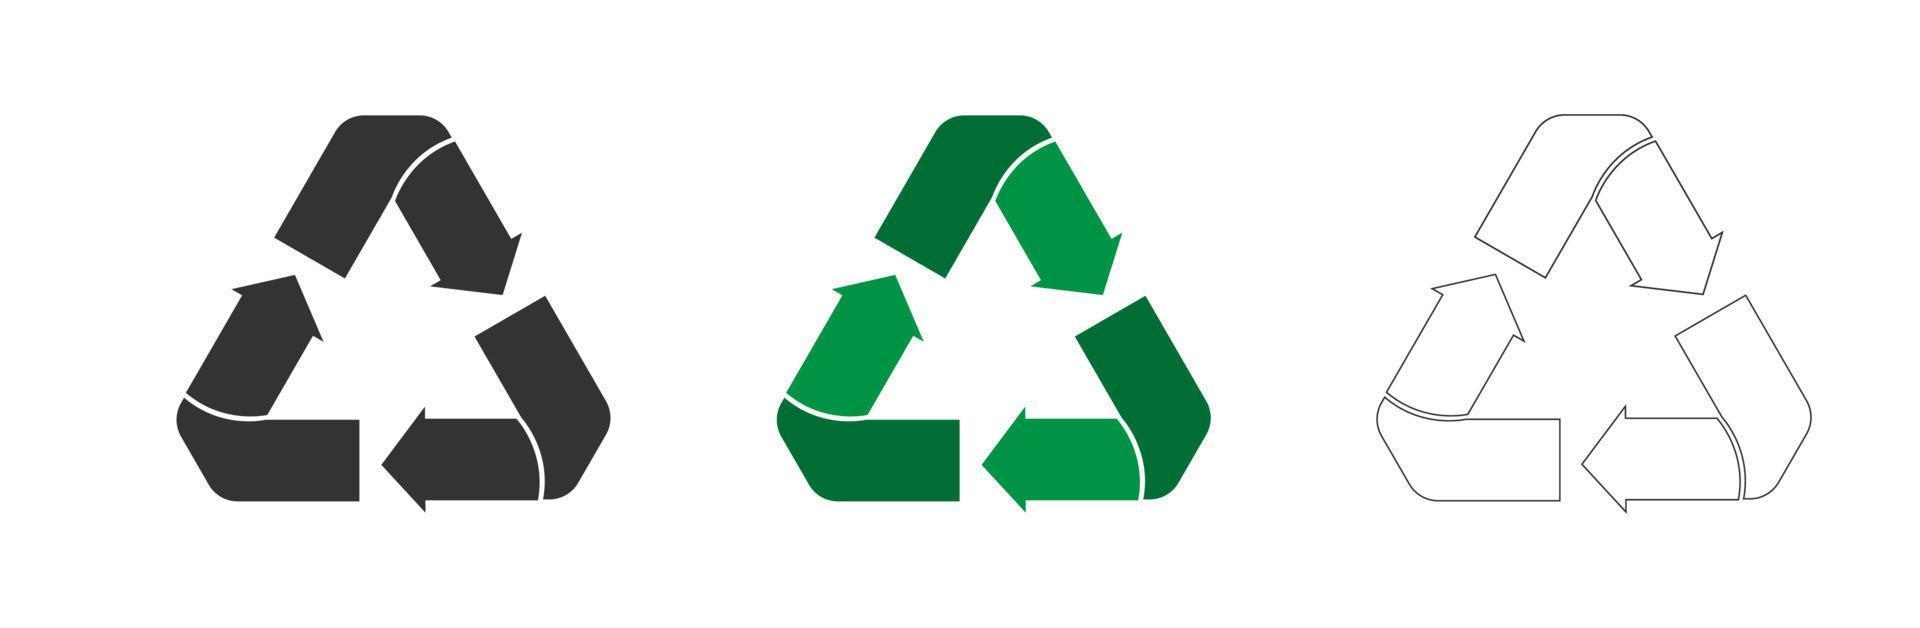 reeks van recycling pictogrammen. driehoek recycling teken symbool vector